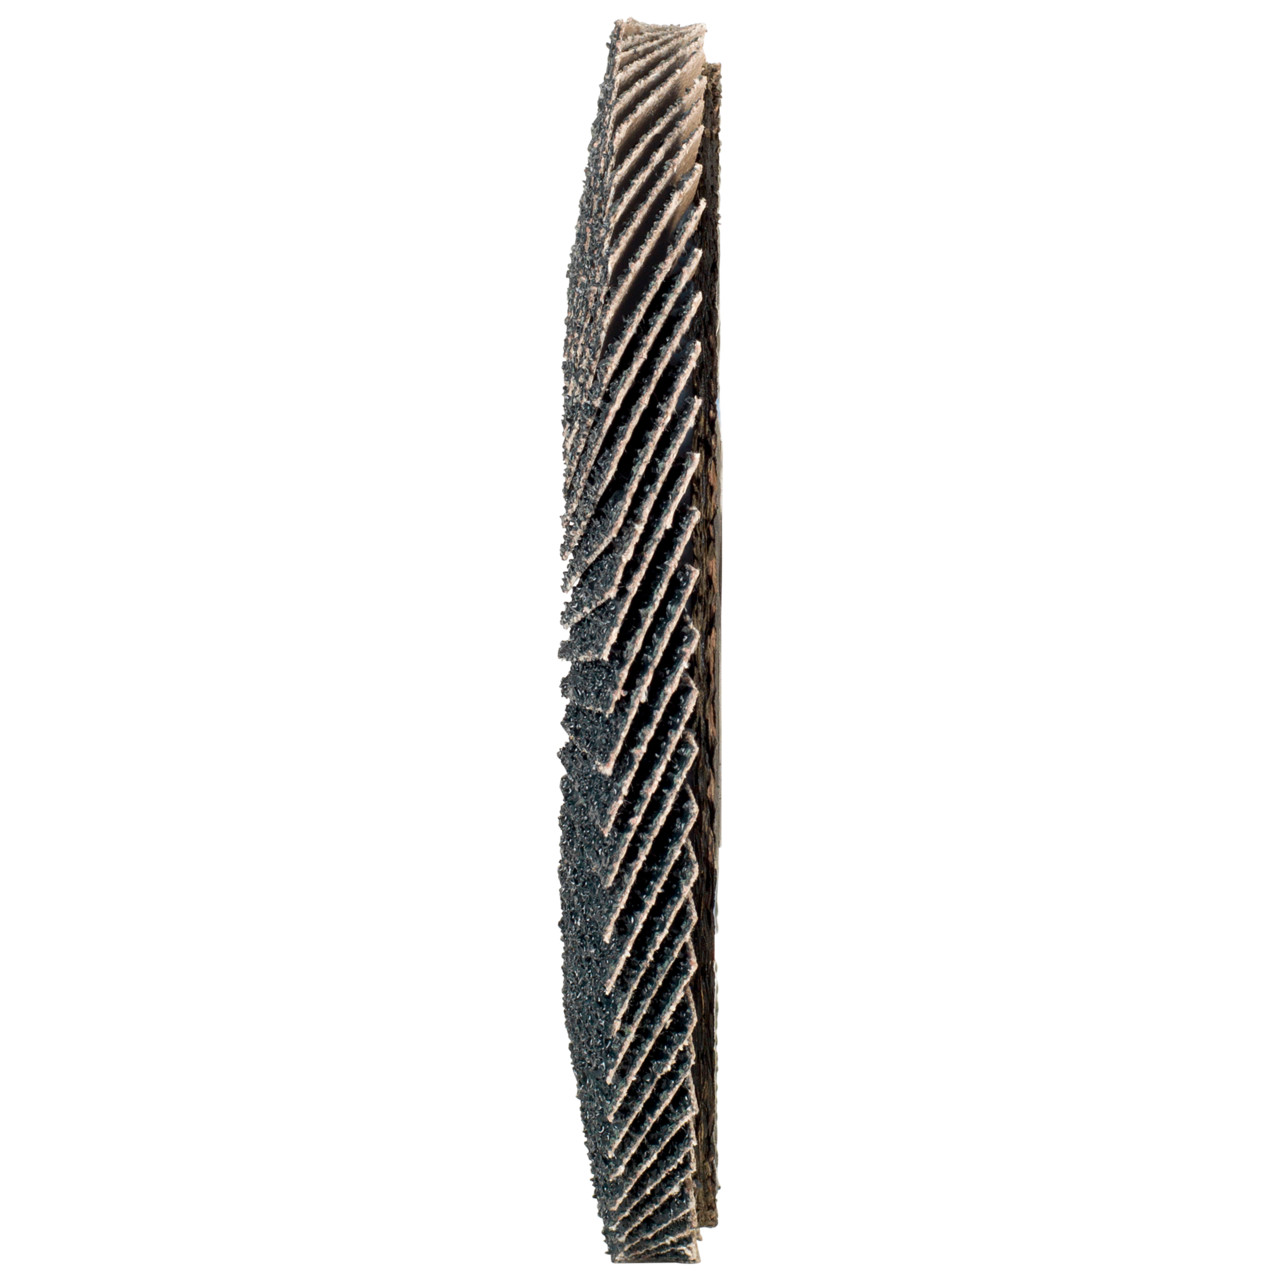 Tyrolit Arandela dentada DxH 178x22,2 2en1 para acero y acero inoxidable, P80, forma: 27A - versión con manivela (versión con cuerpo de soporte de fibra de vidrio), Art. 668673